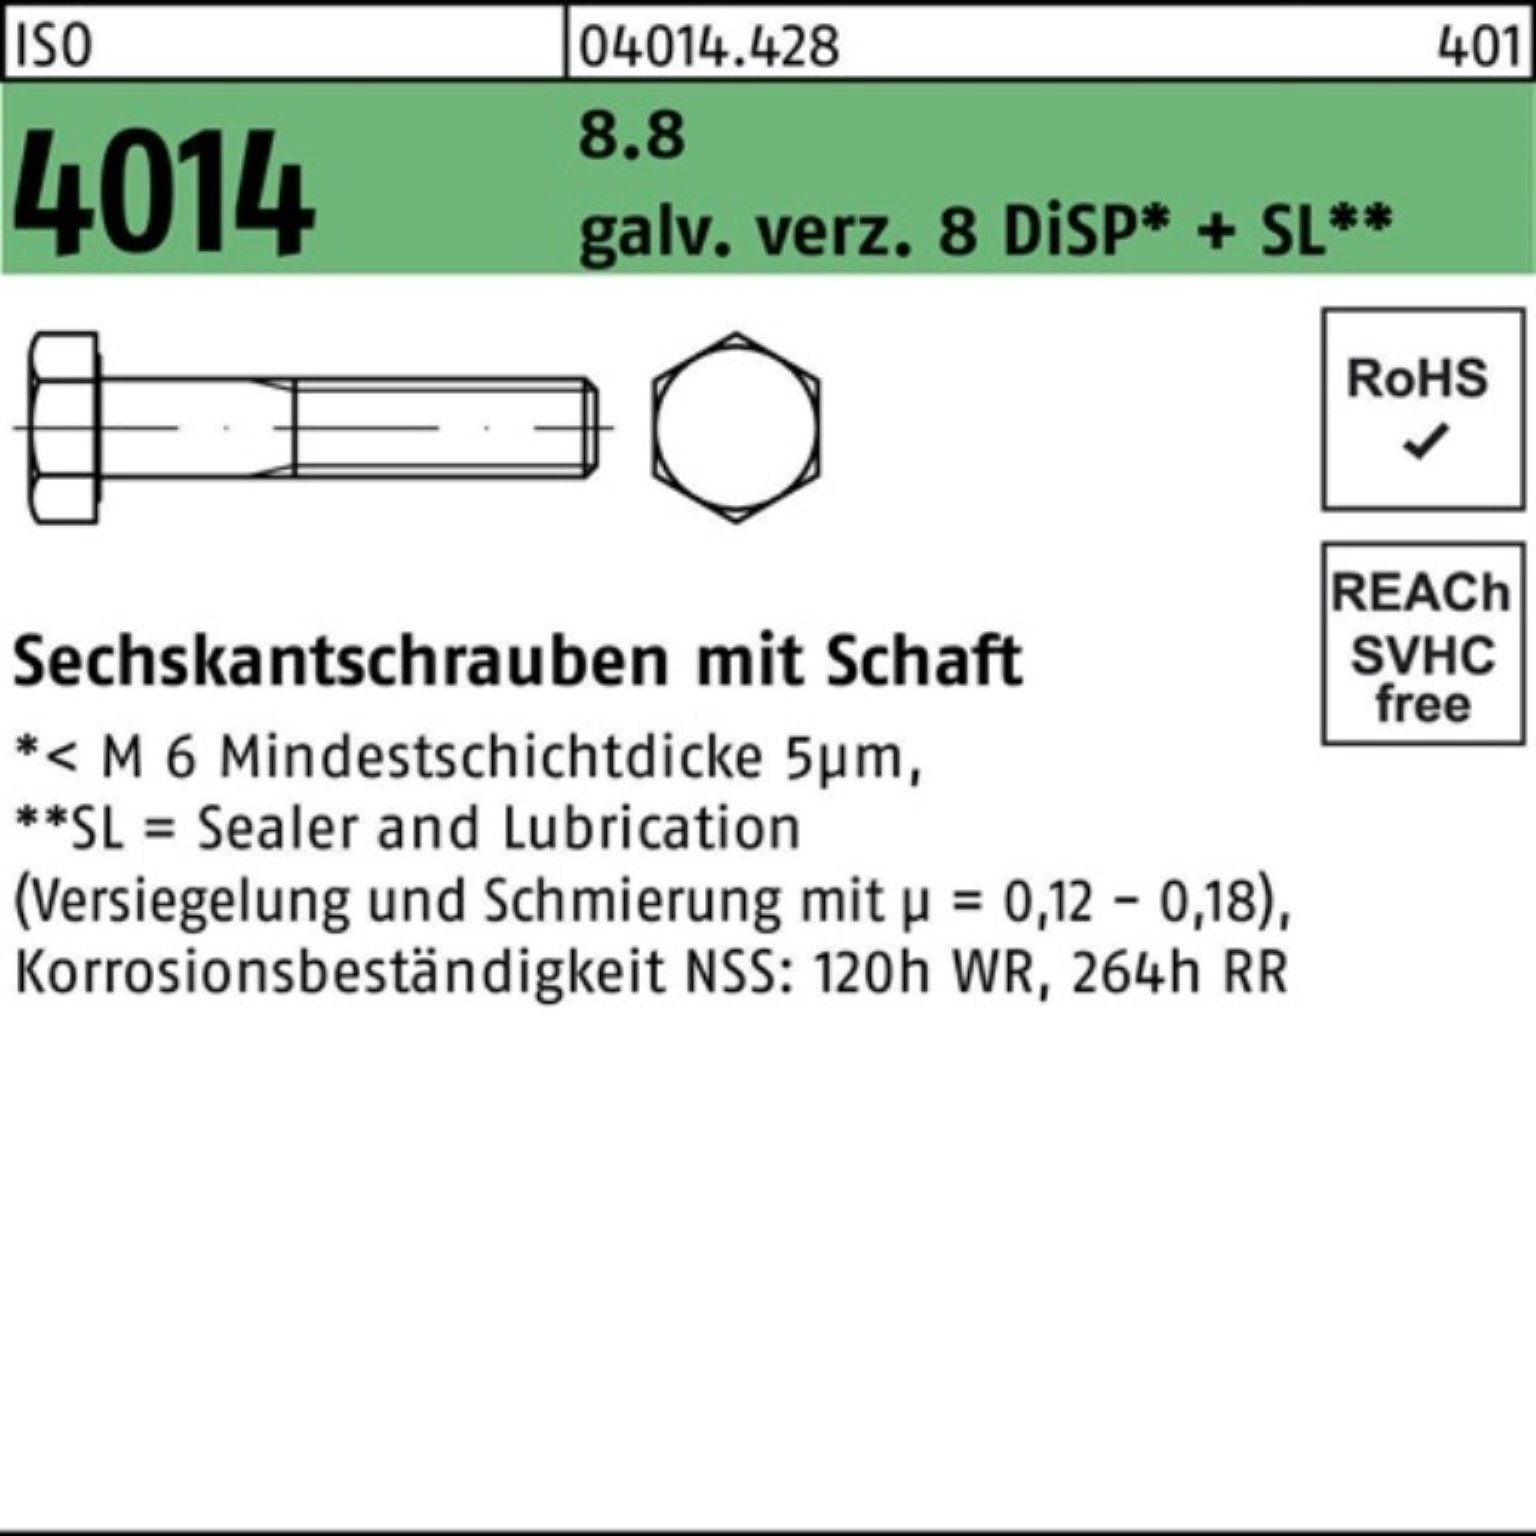 Bufab Sechskantschraube 100er Pack Sechskantschraube ISO 4014 Schaft M12x135 8.8 galv.verz. 8